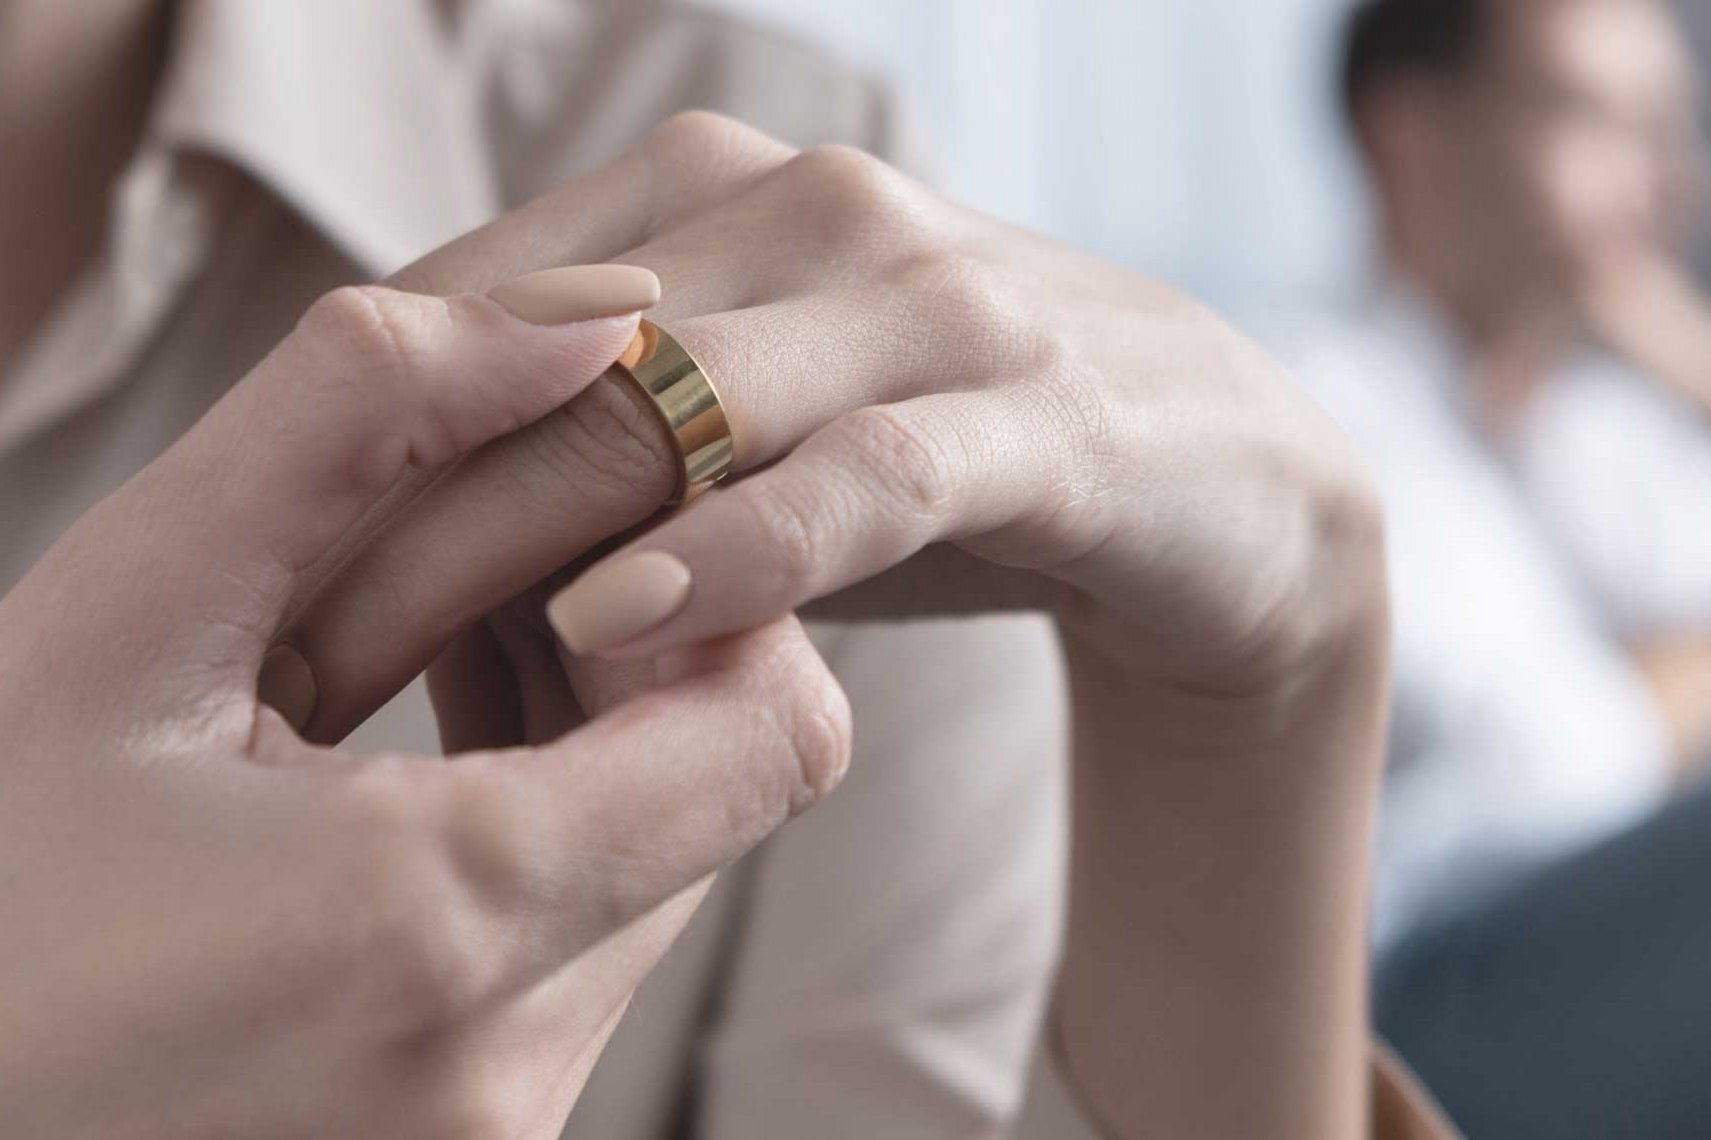 Frau zieht sich Ehering vom Finger, um eine eheliche Krise zu verdeutlichen